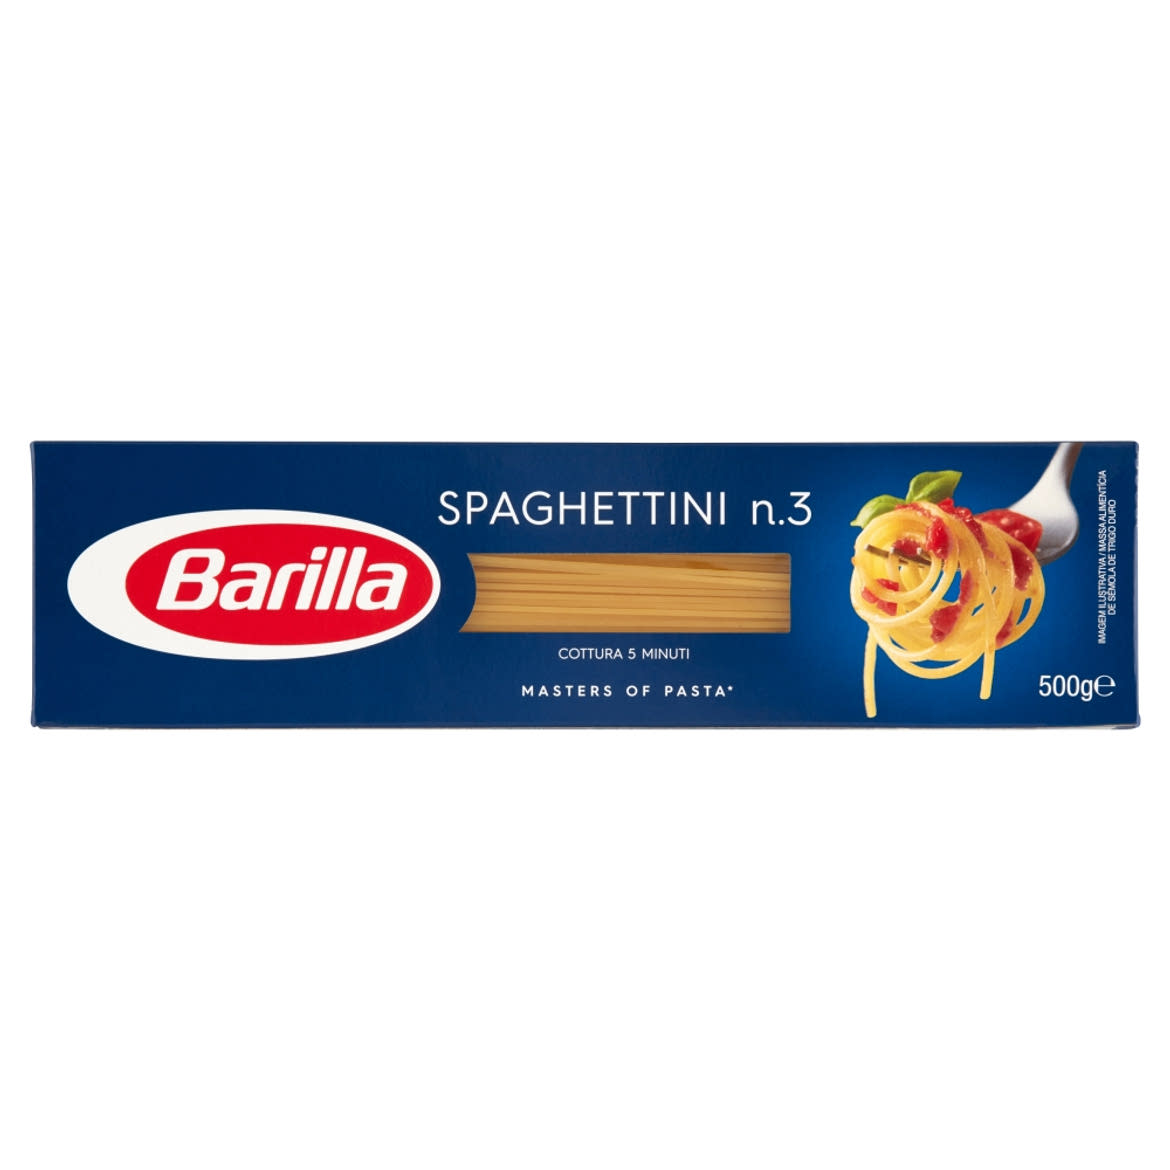 Barilla Spaghettini szálas durum száraztészta